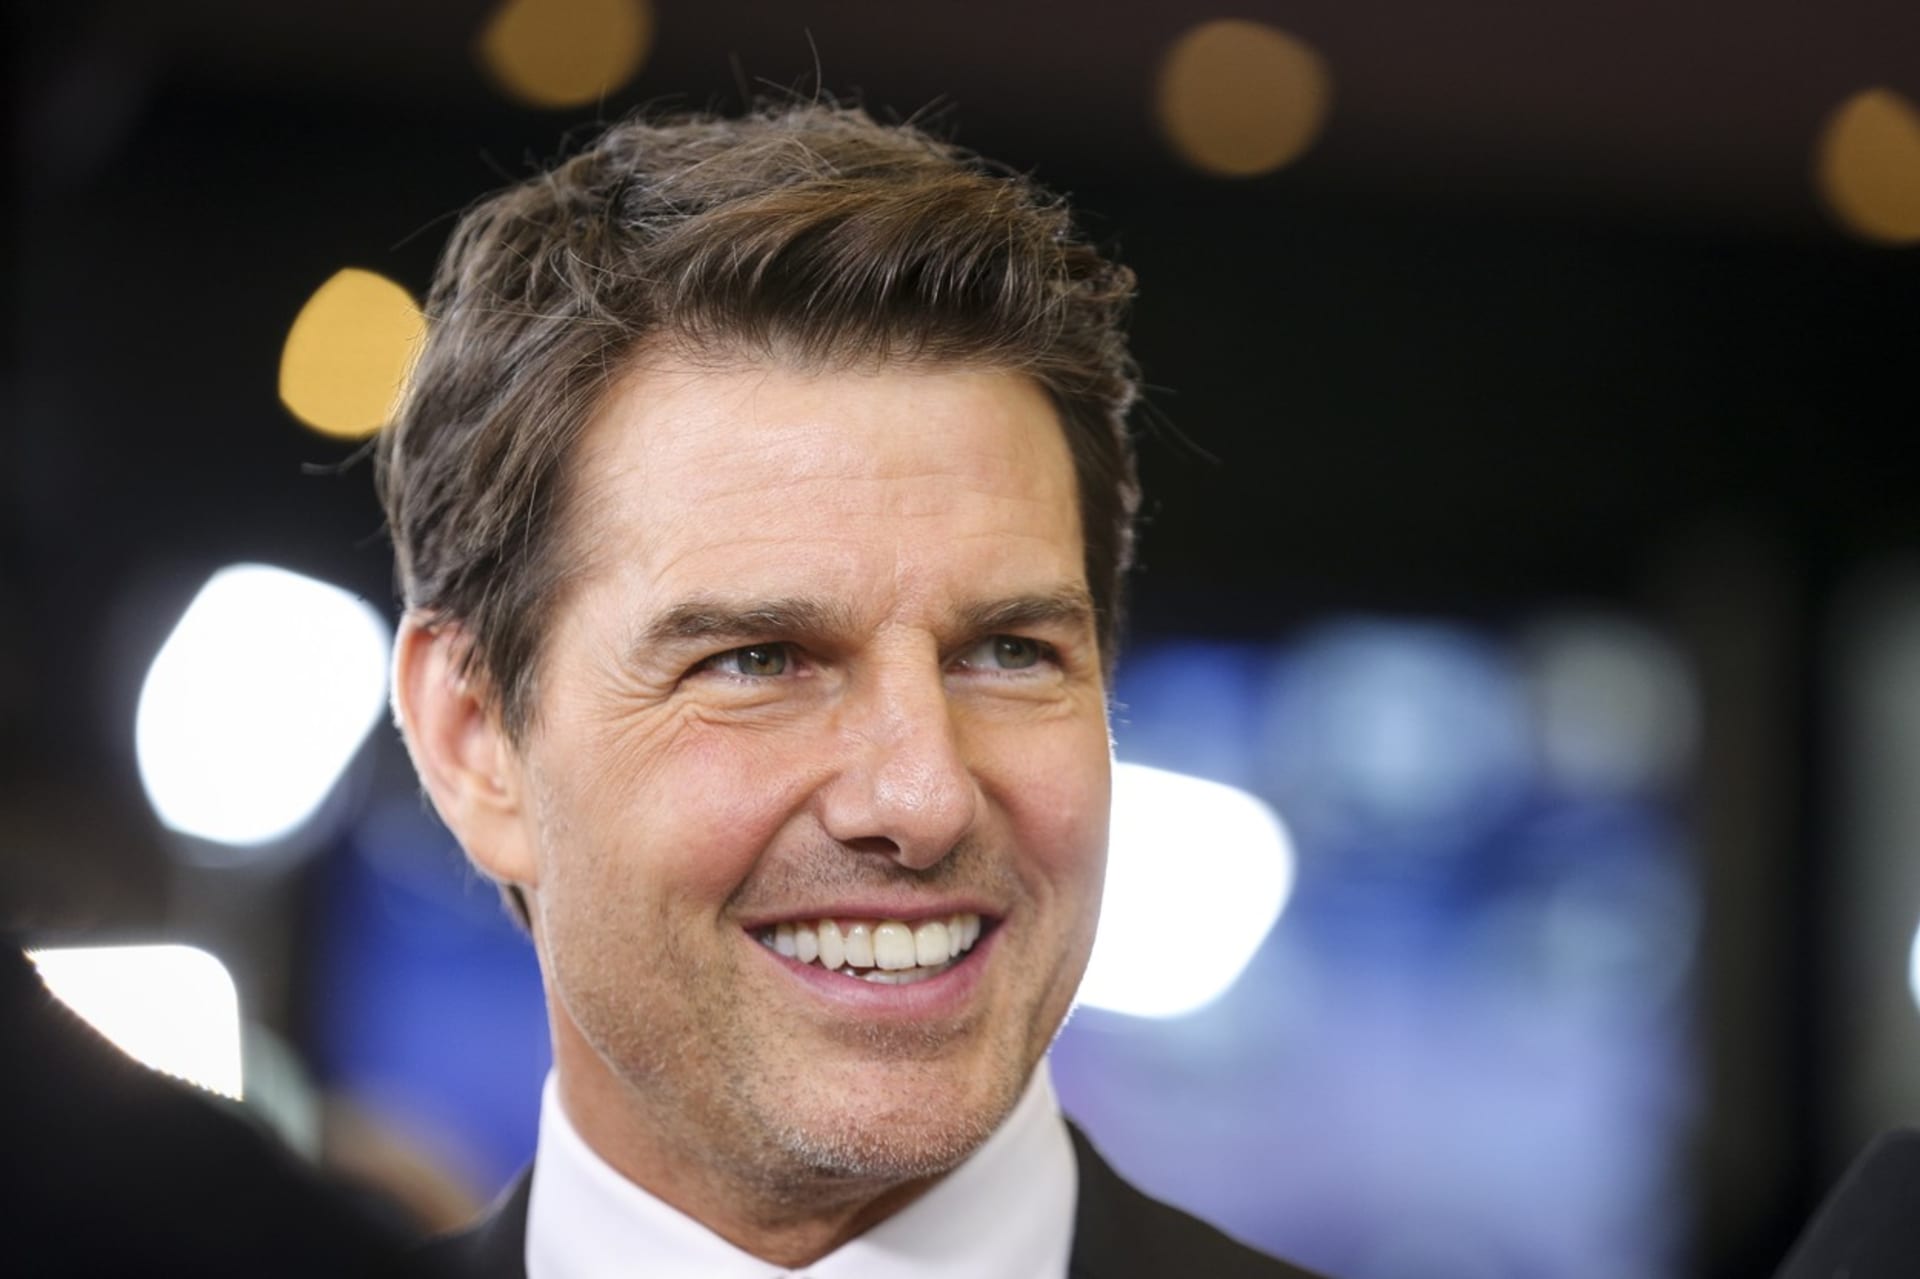 Herec Tom Cruise, jehož proslavil Top Gun a později především filmová série Mission Impossible, se taktéž oženil a rozvedl třikrát. Po tříleté manželské epizodě s herečkou Mimi Rogers přišlo osudové, leč ne celoživotní spojení s Nicole Kidman (1990–2001).